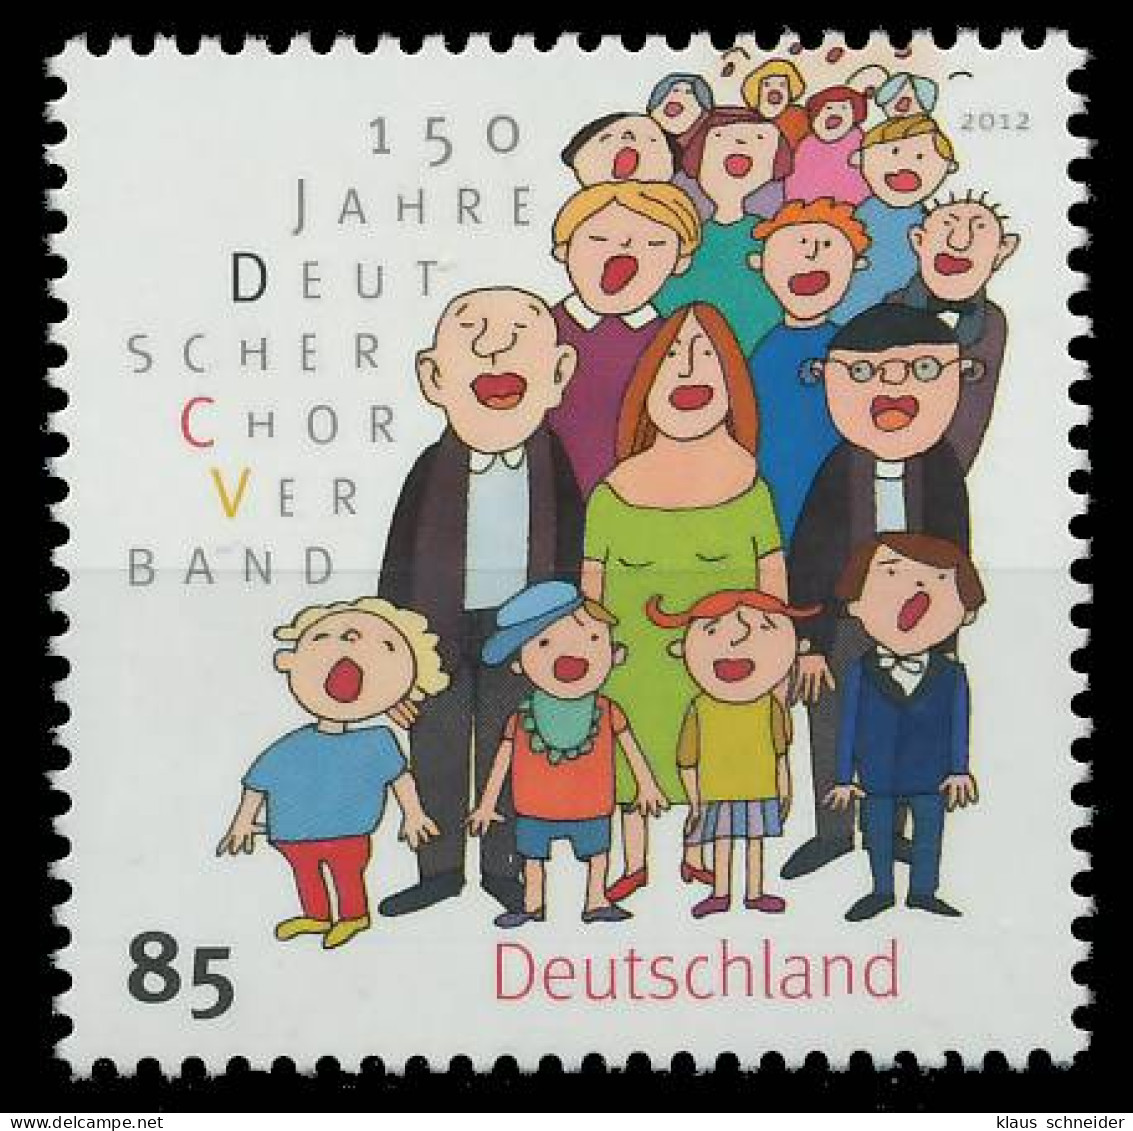 BRD BUND 2012 Nr 2939 Postfrisch S3B7FAA - Unused Stamps